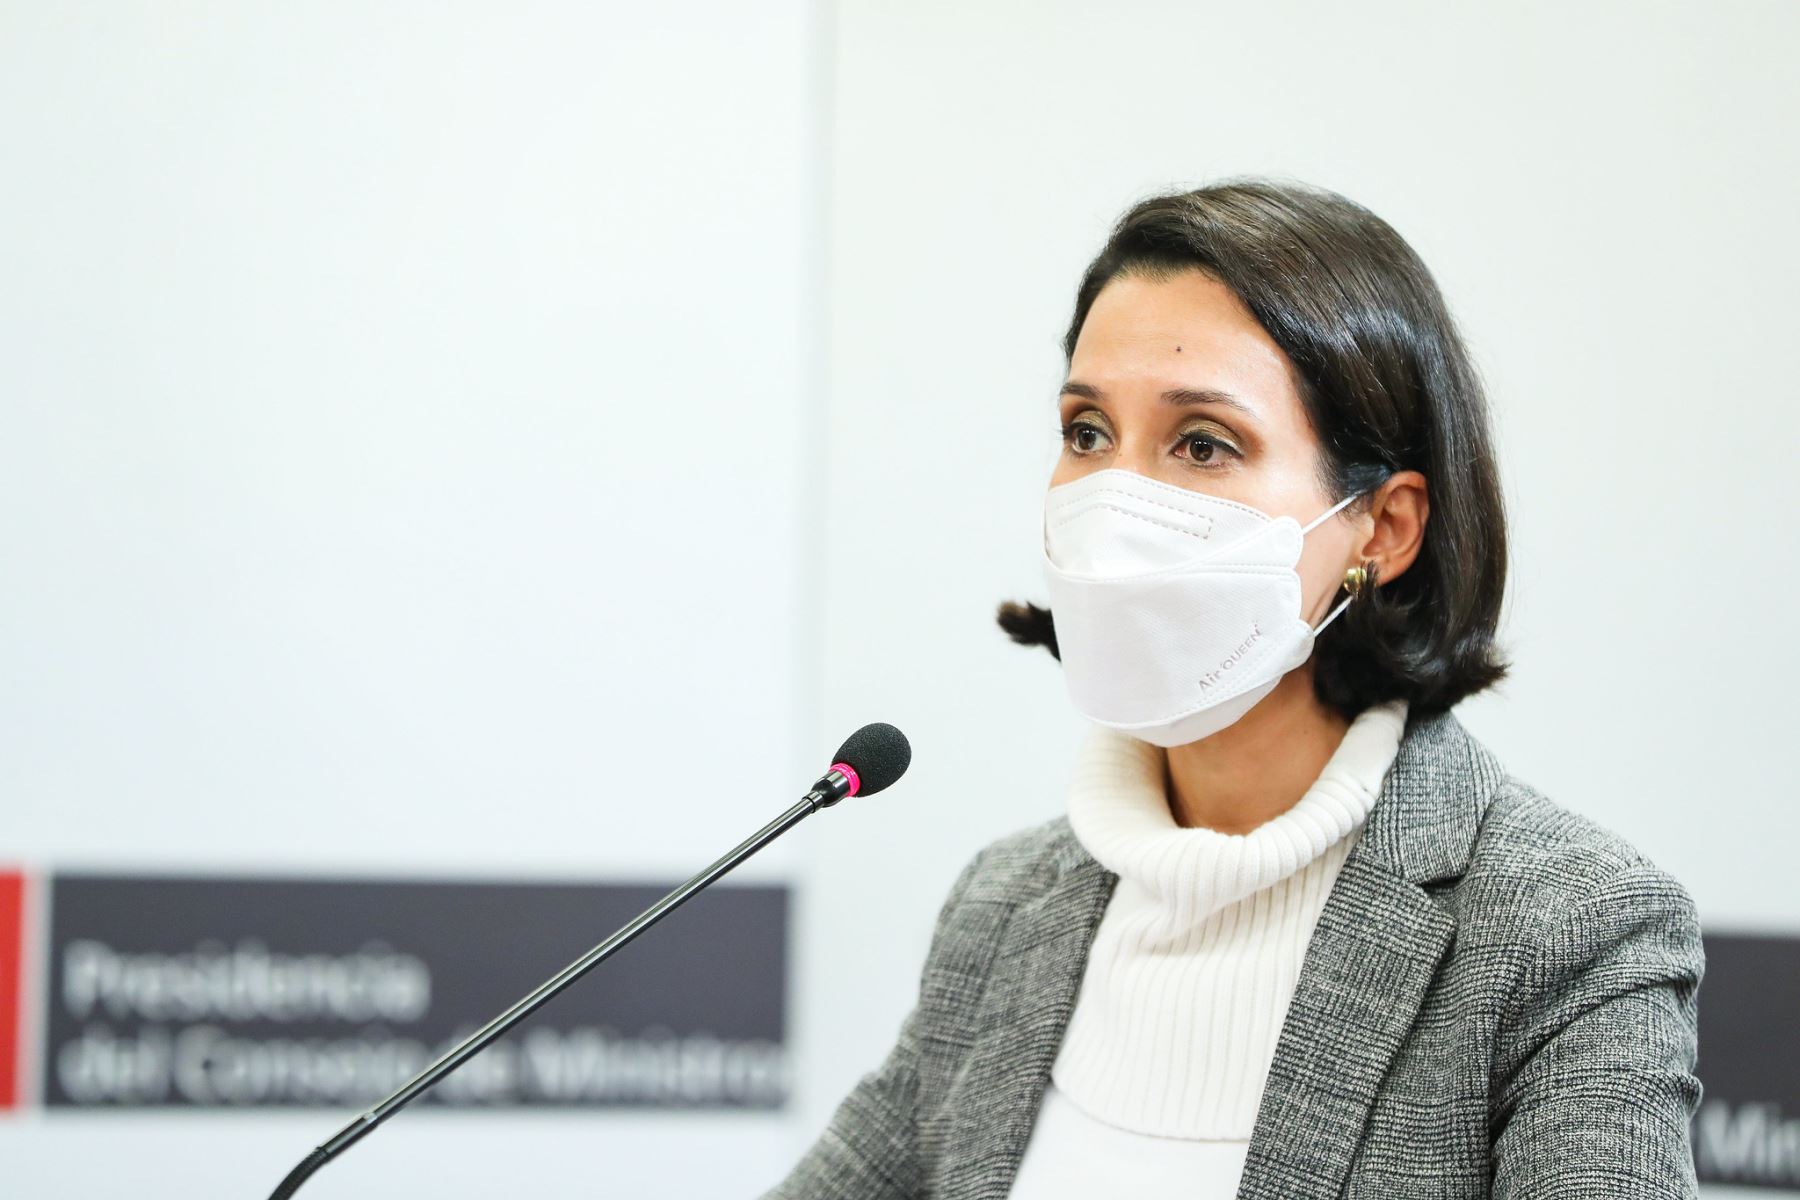 El Ministro del Interior, José Elice, junto a la ministra de Comercio Exterior, Claudia Cornejo, Ofrecieron una conferencia de prensa sobre los avances frente a pandemia y anuncios sobre la coyuntura nacional. Foto: ANDINA/PCM